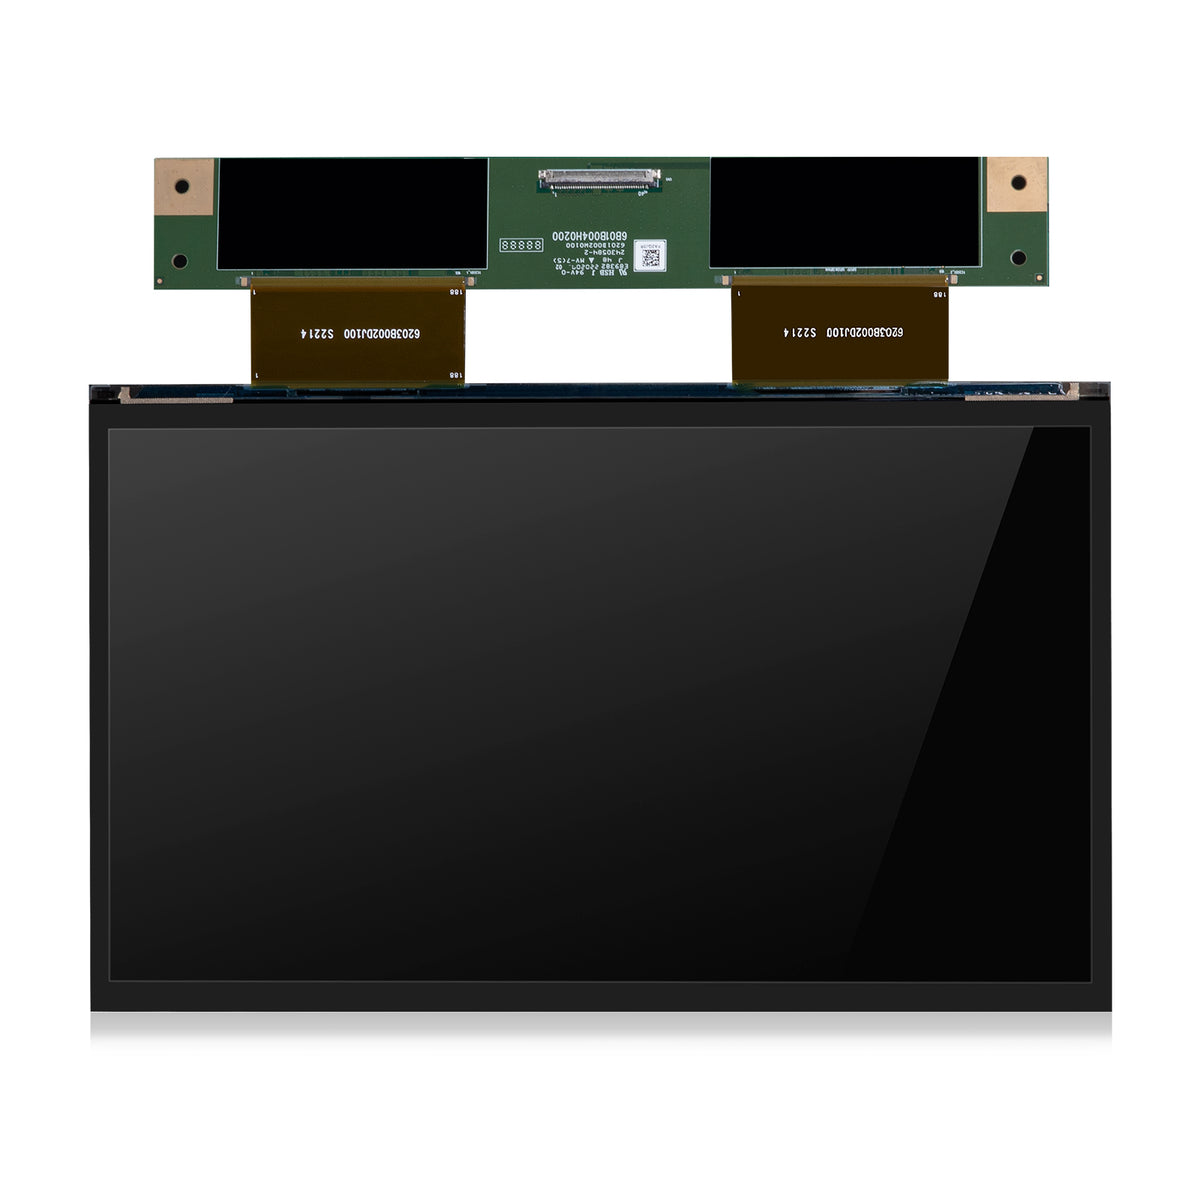 ELEGOO 10'' 8K Mono-LCD für Saturn 2 und Saturn 8K